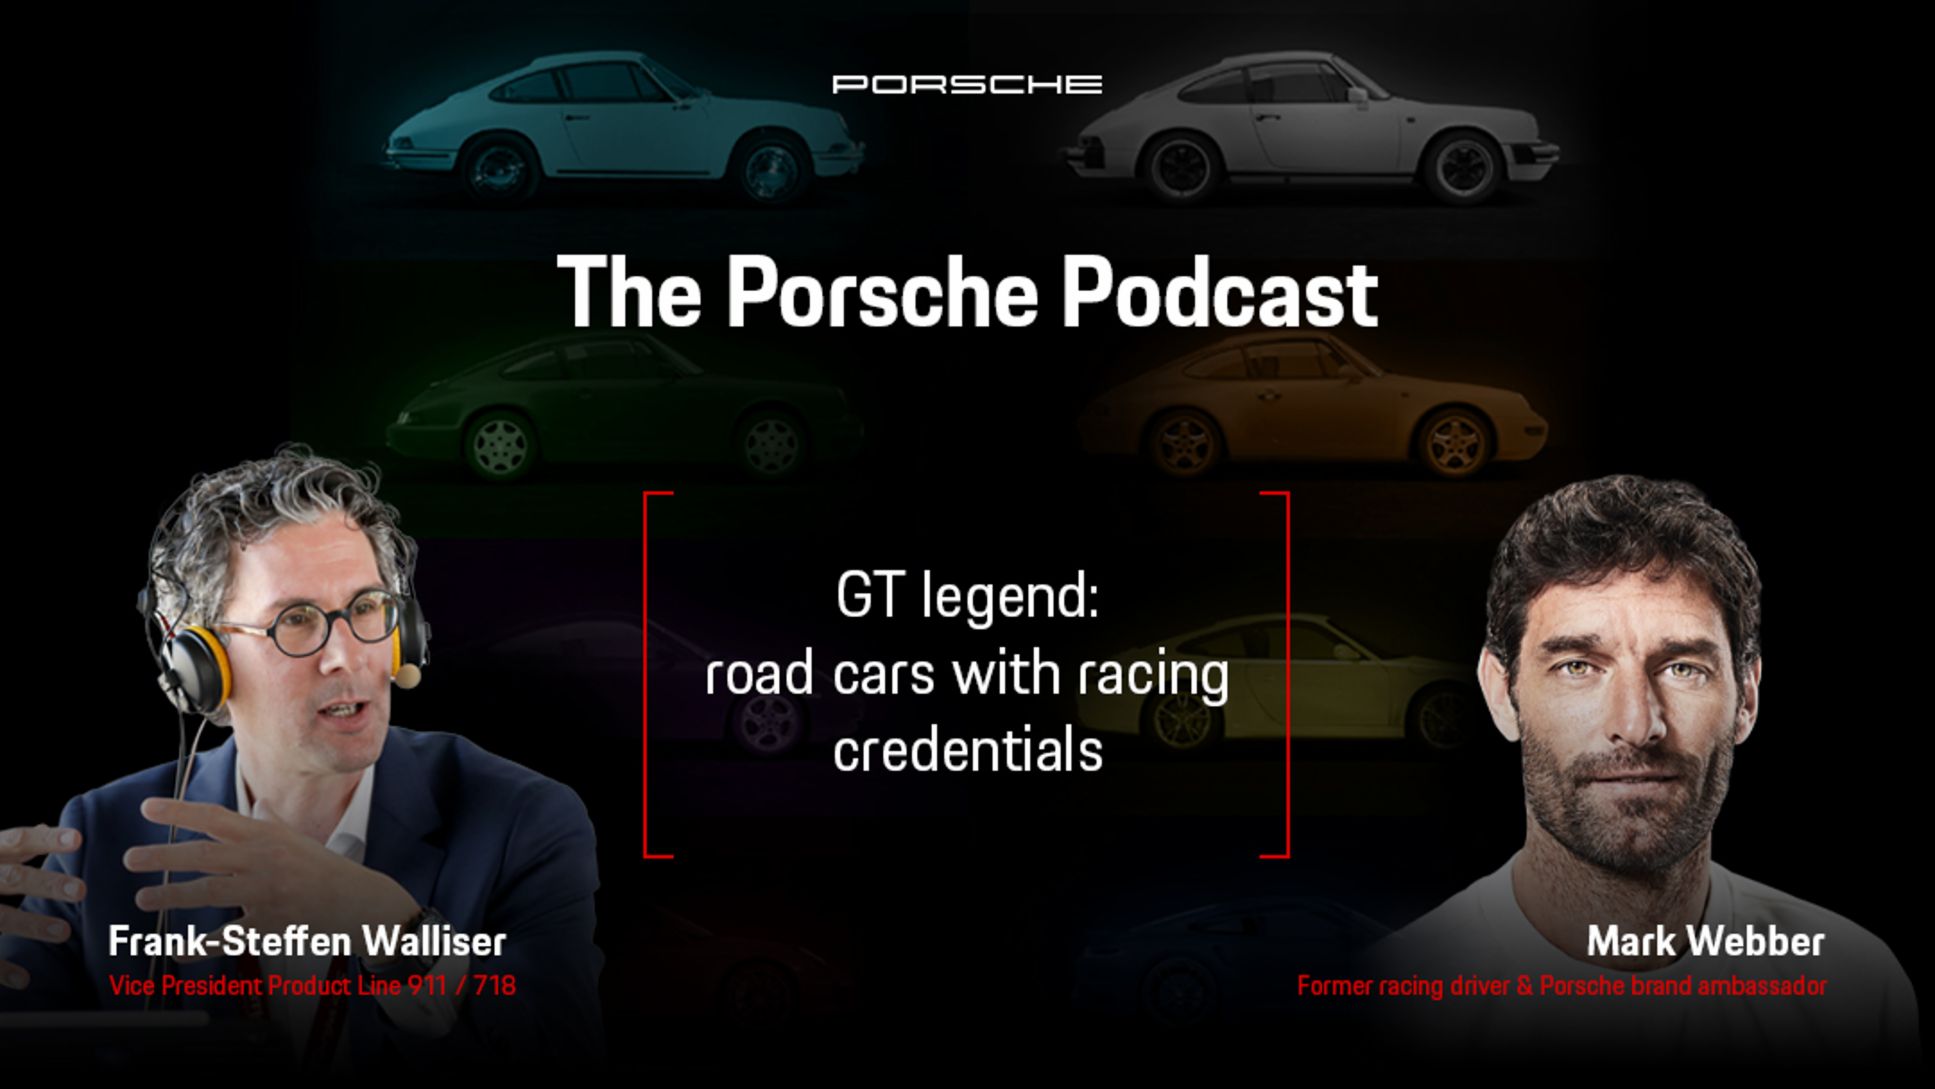 Frank-Steffen Walliser, Vicepresidente de las gamas 911 / 718, y Mark Webber, embajador de Porsche, (i-d), Porsche Podcast, episodio 2, 2021, Porsche AG